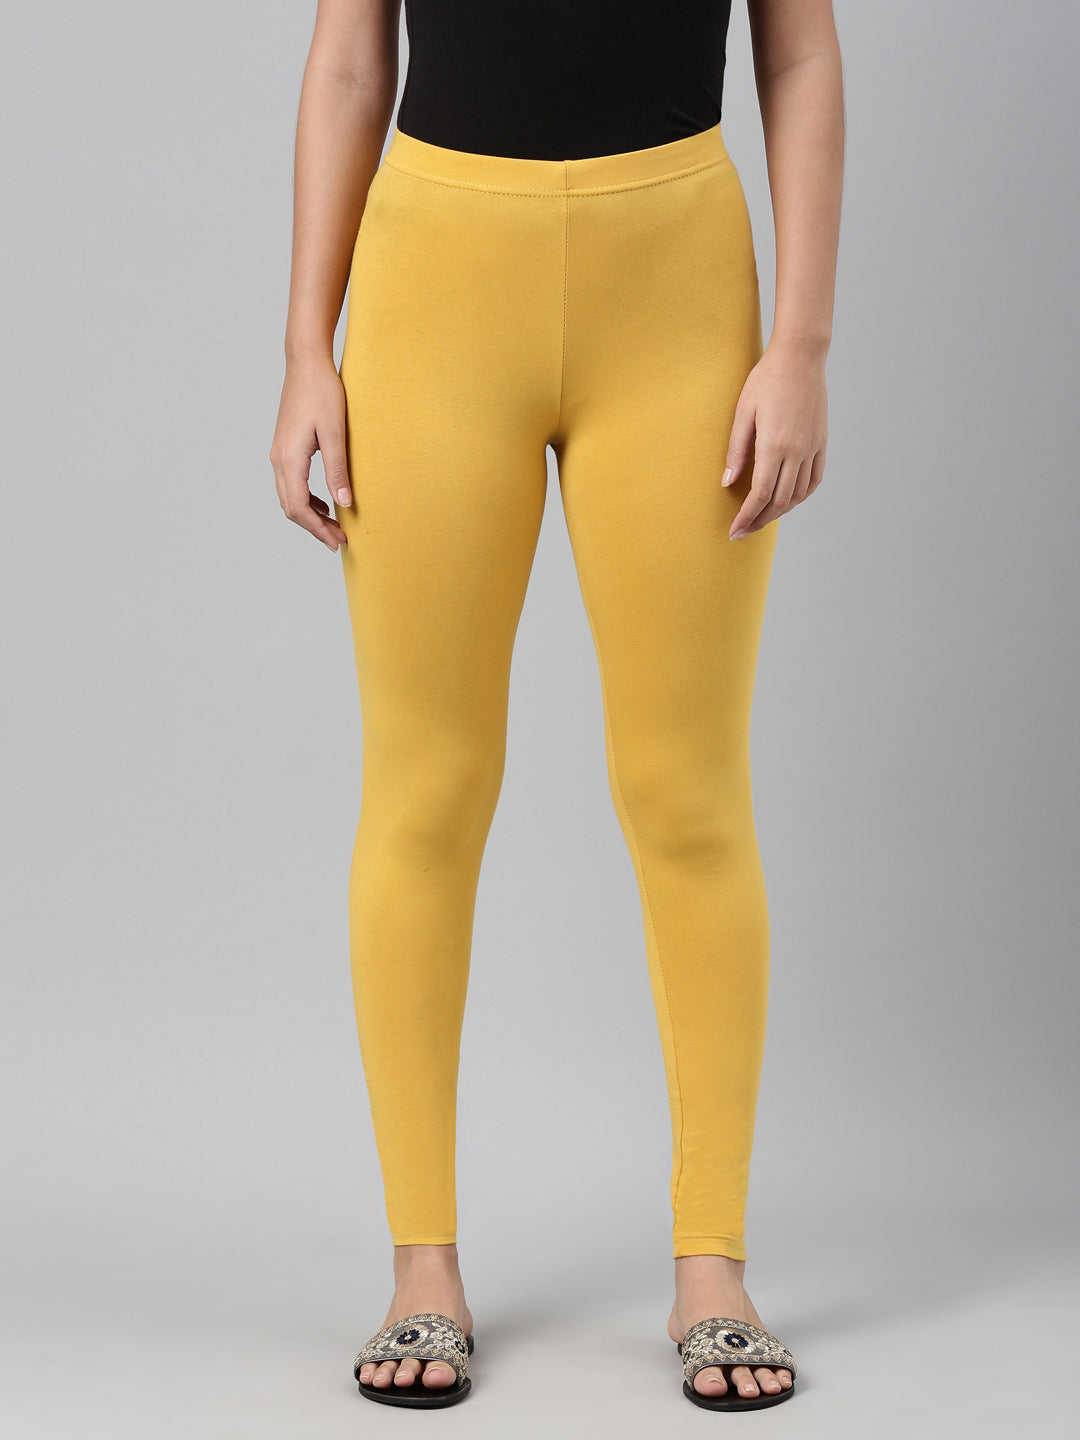 Buy Golden Leggings for Women by AURELIA Online | Ajio.com